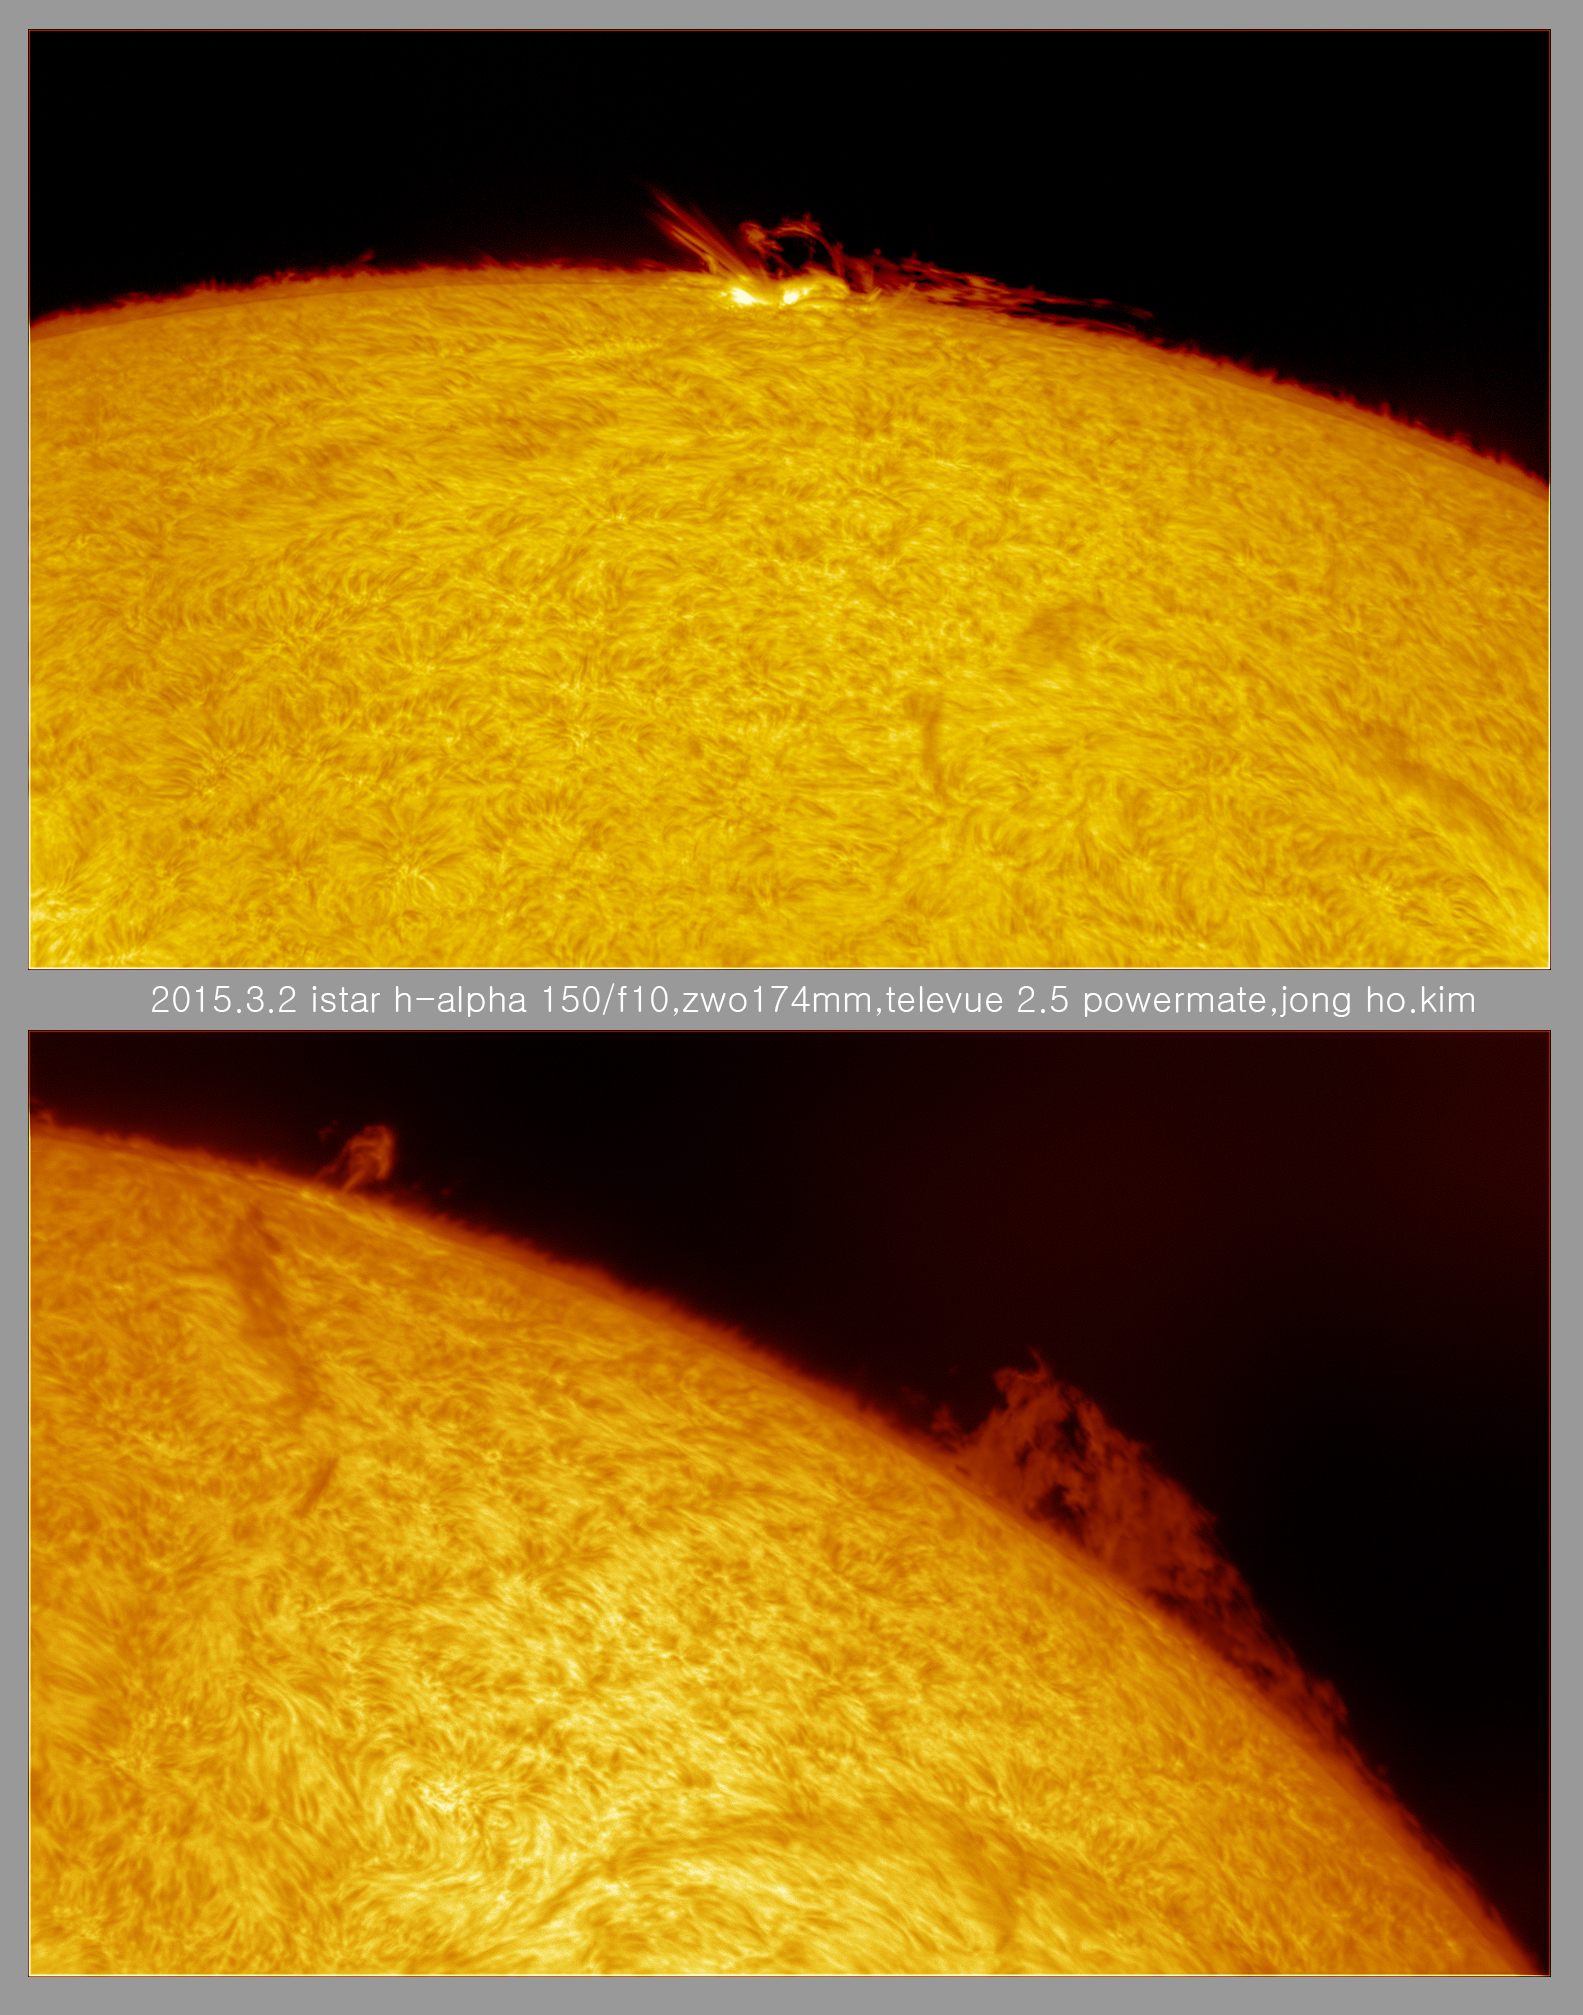 sun-15.3.2-1.jpg